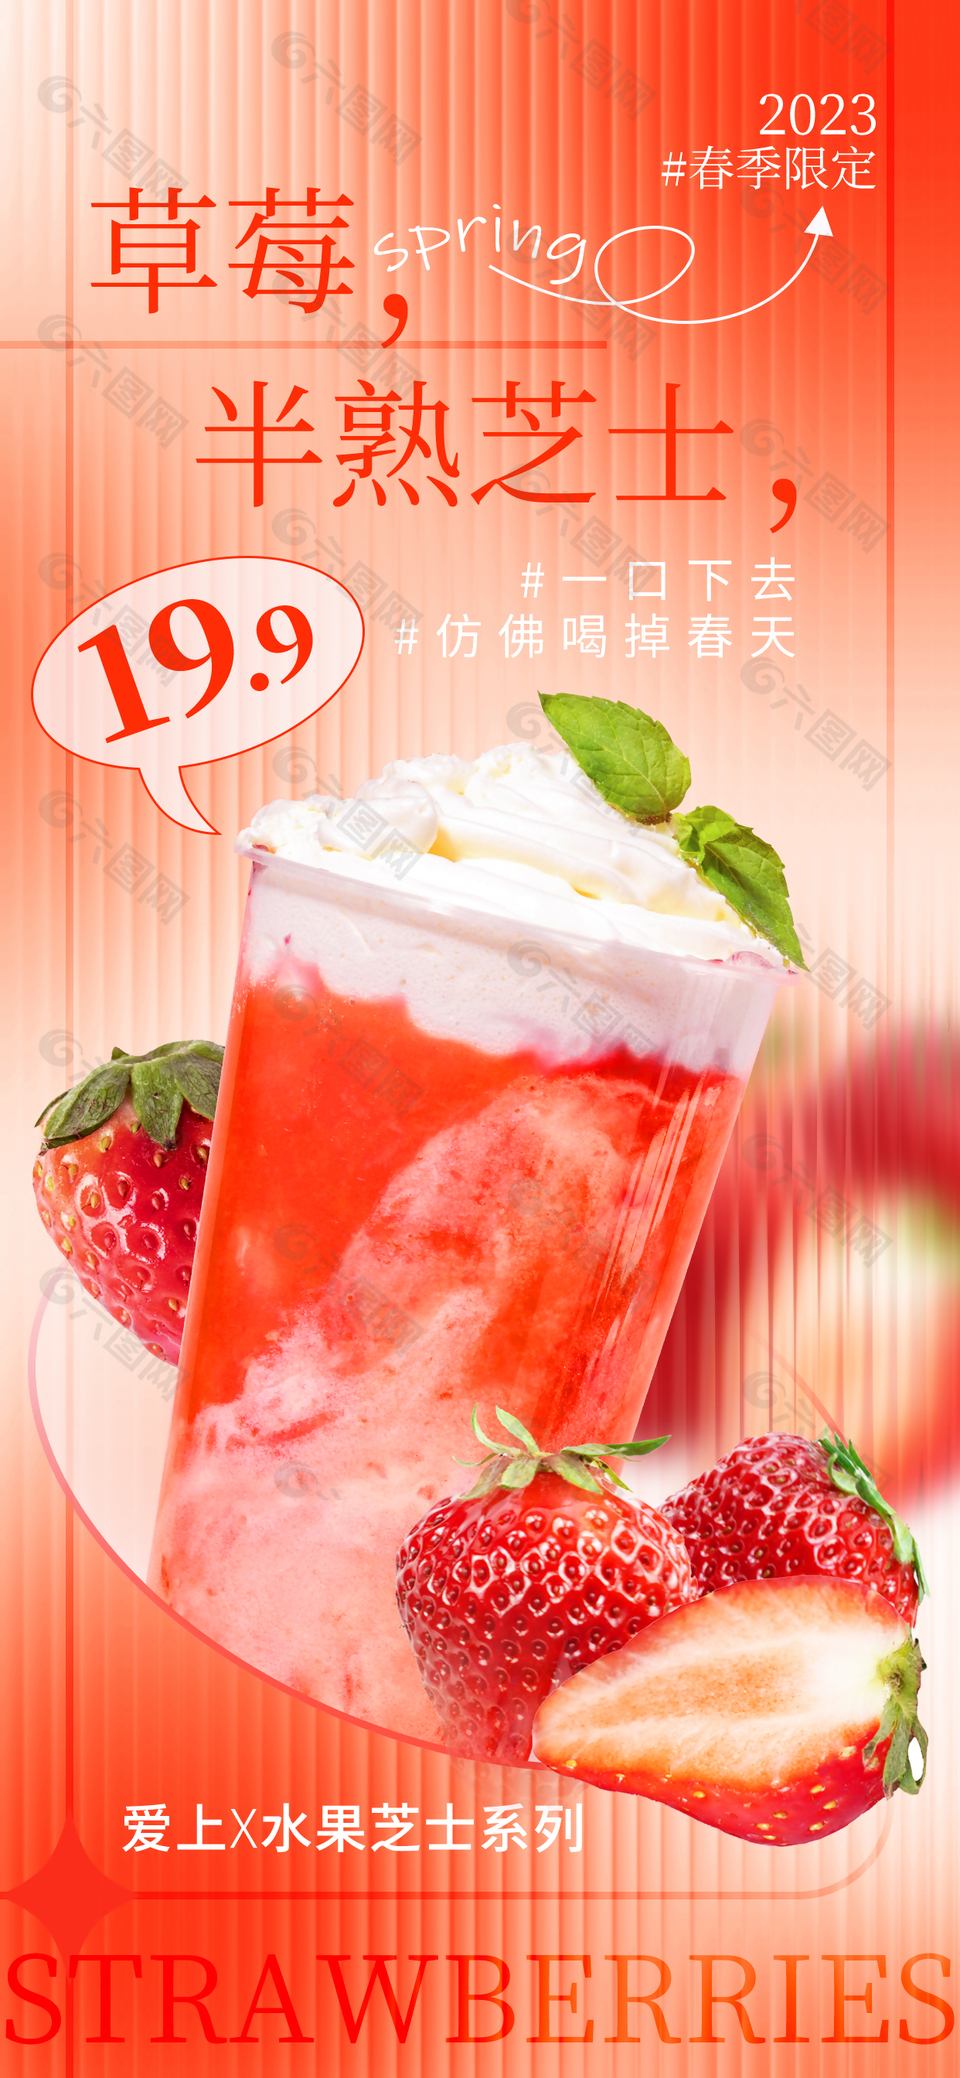 草莓芝士创意奶茶推广海报